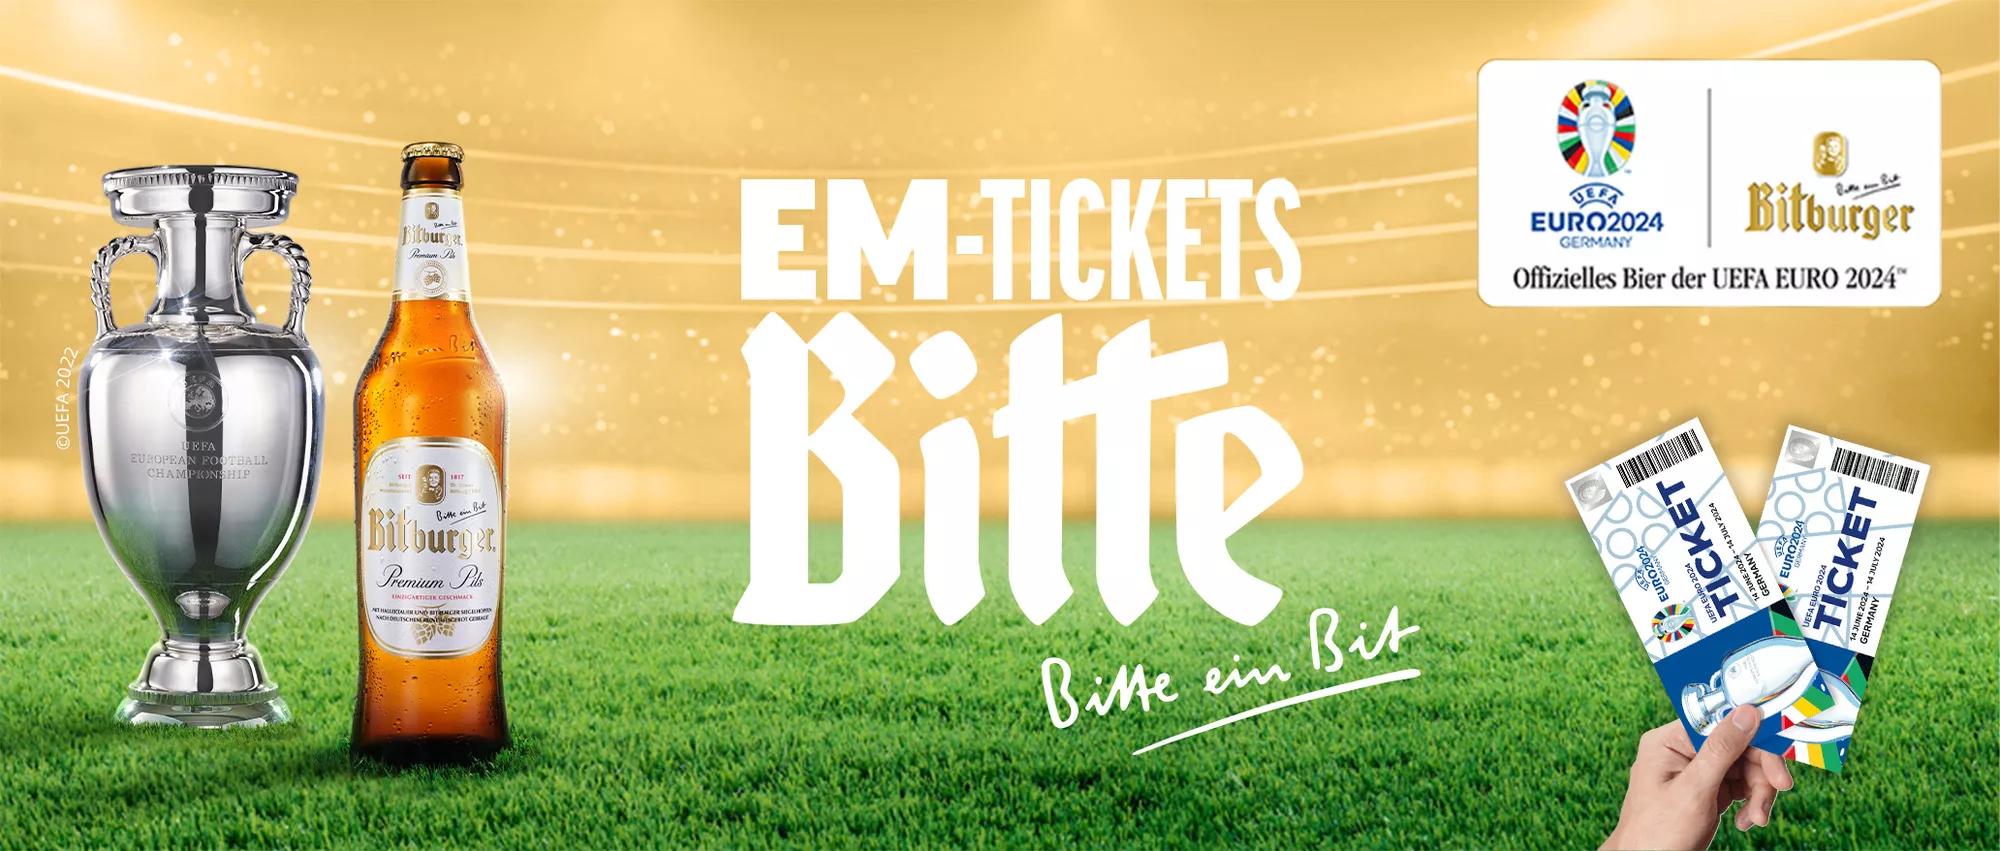 Bitburger Gewinnspiel für UEFA Euro 2024  Banner